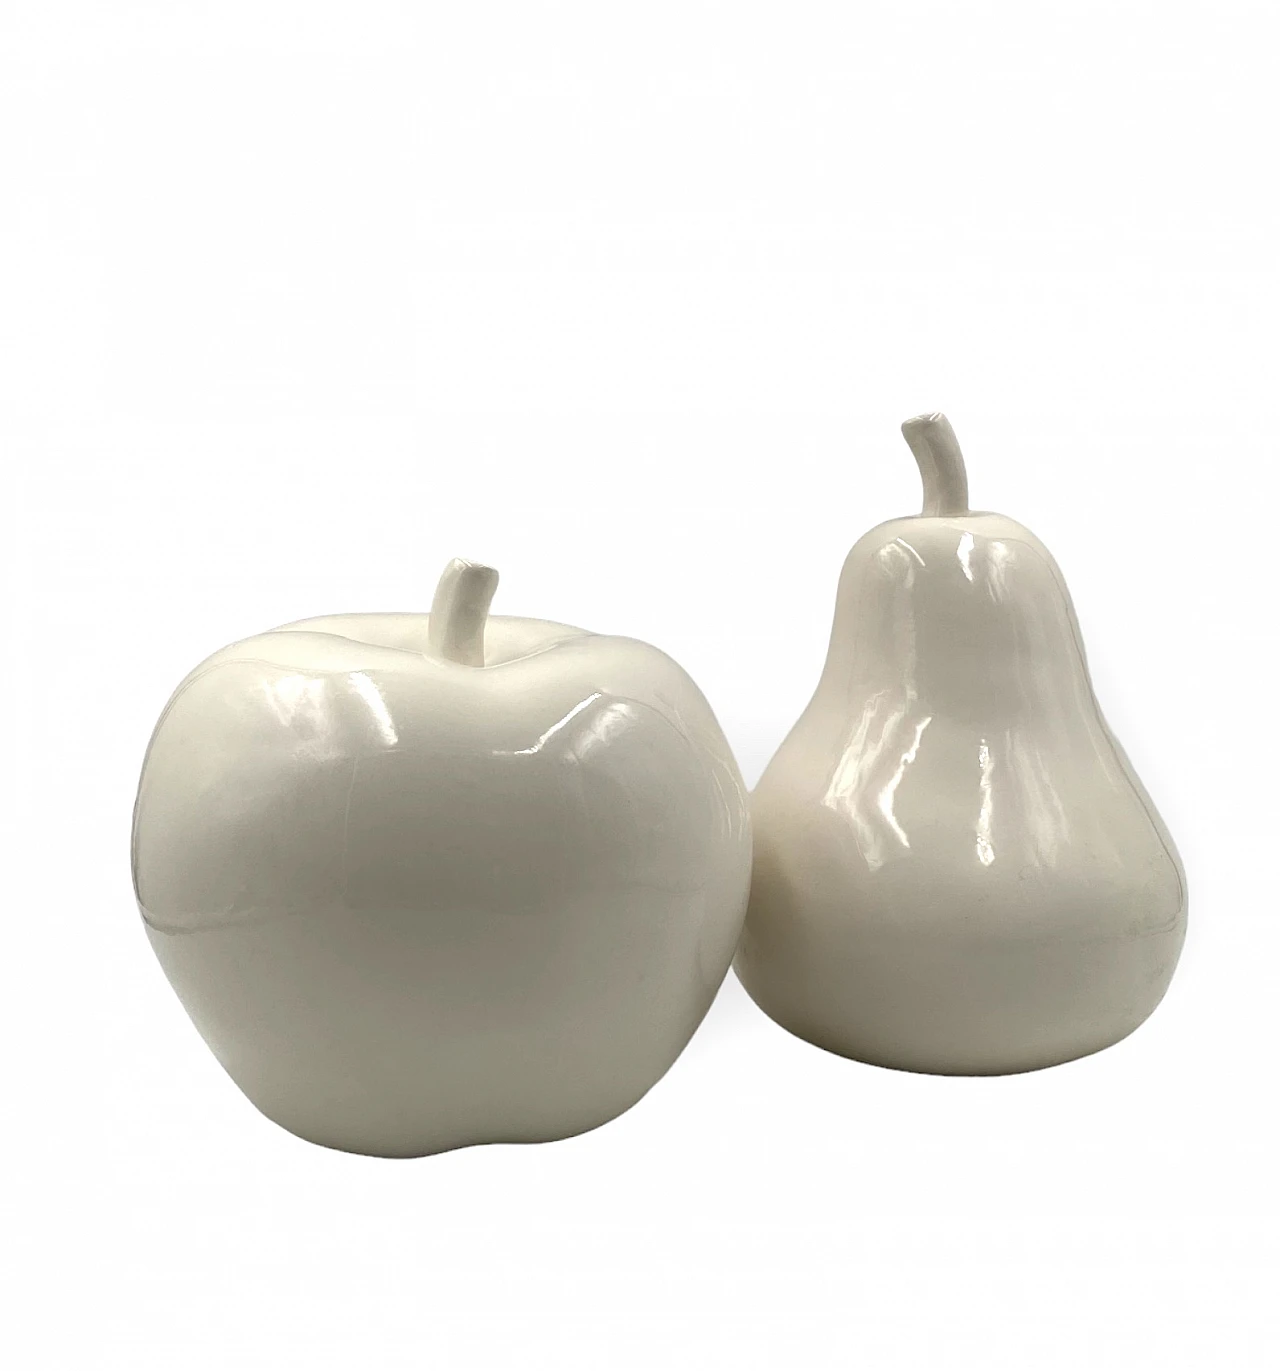 White ceramic apple & pear sculptures, 1980s 13